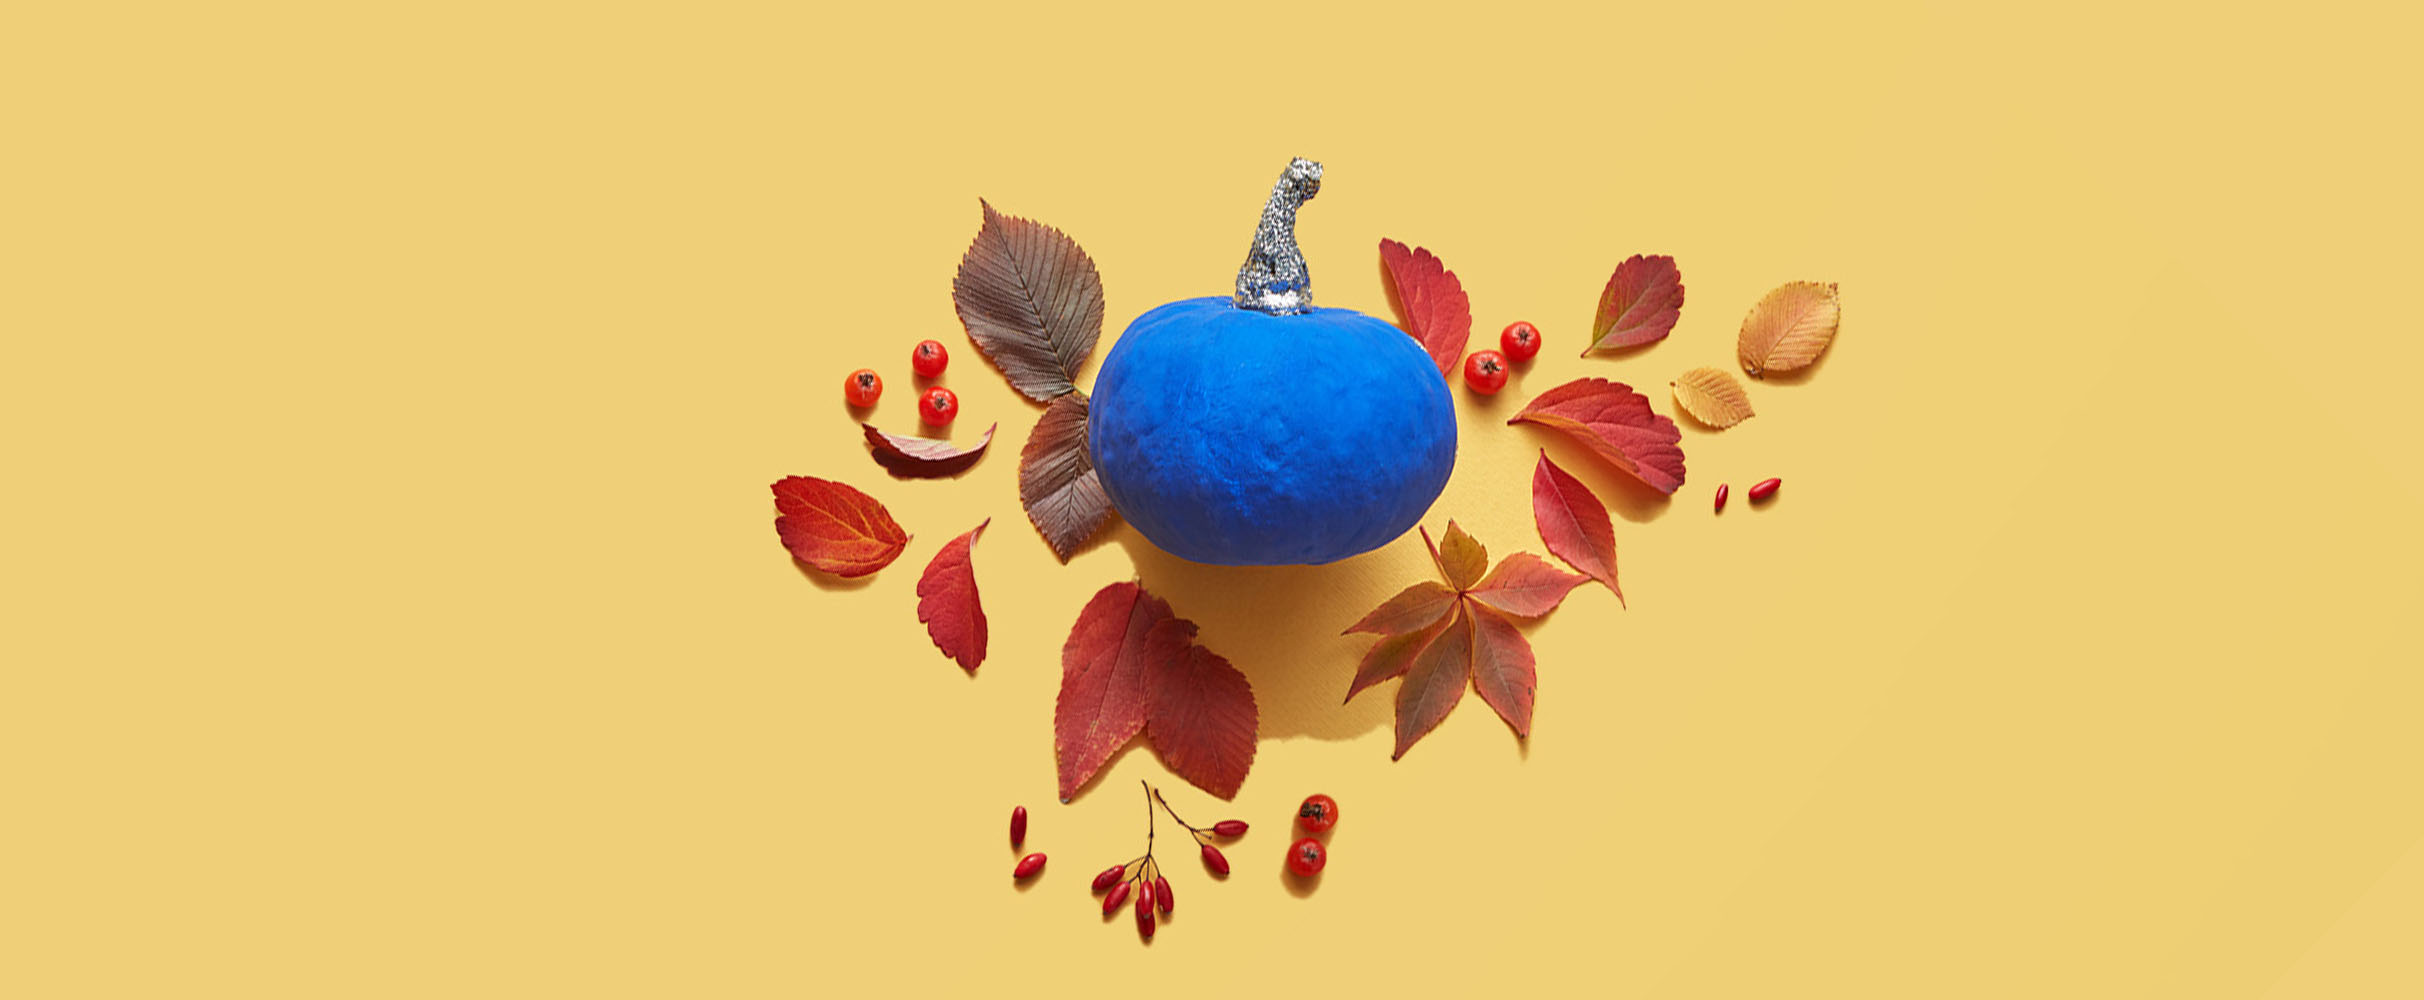 Hi ha herfst: herfstknutsels om te maken met je koter